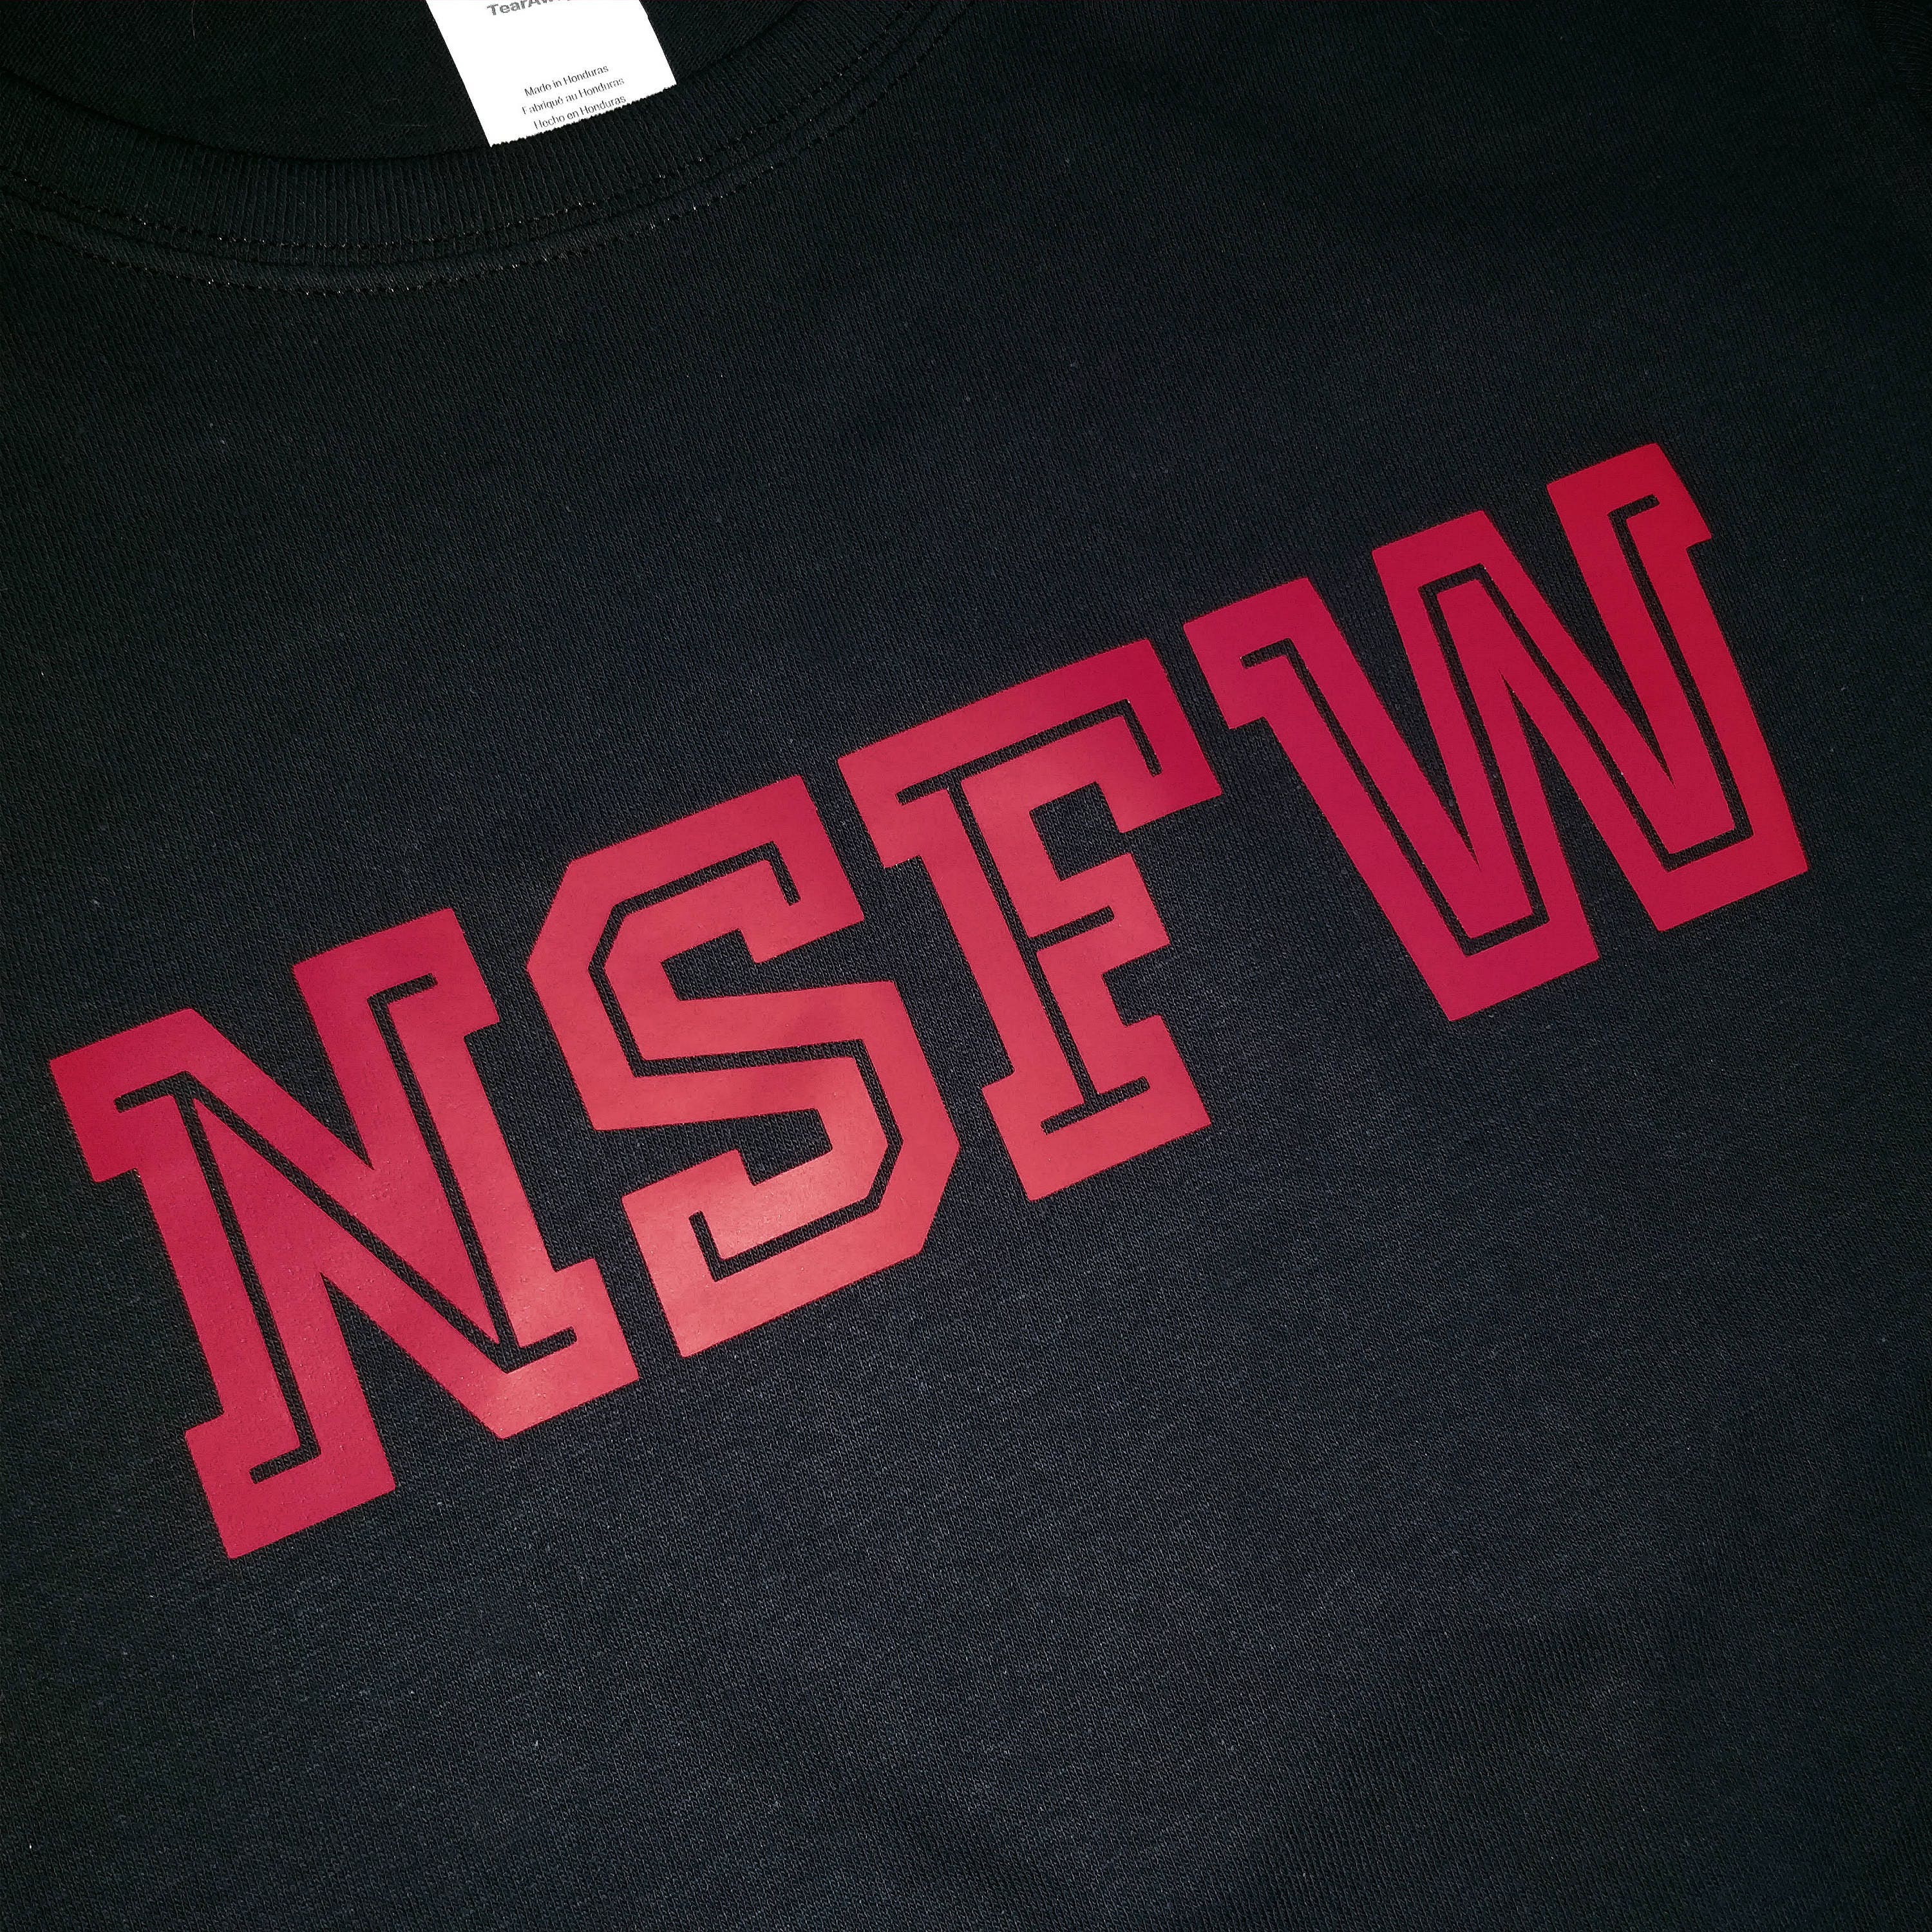 NFSW - Not Safe For Work Women's T-Shirt